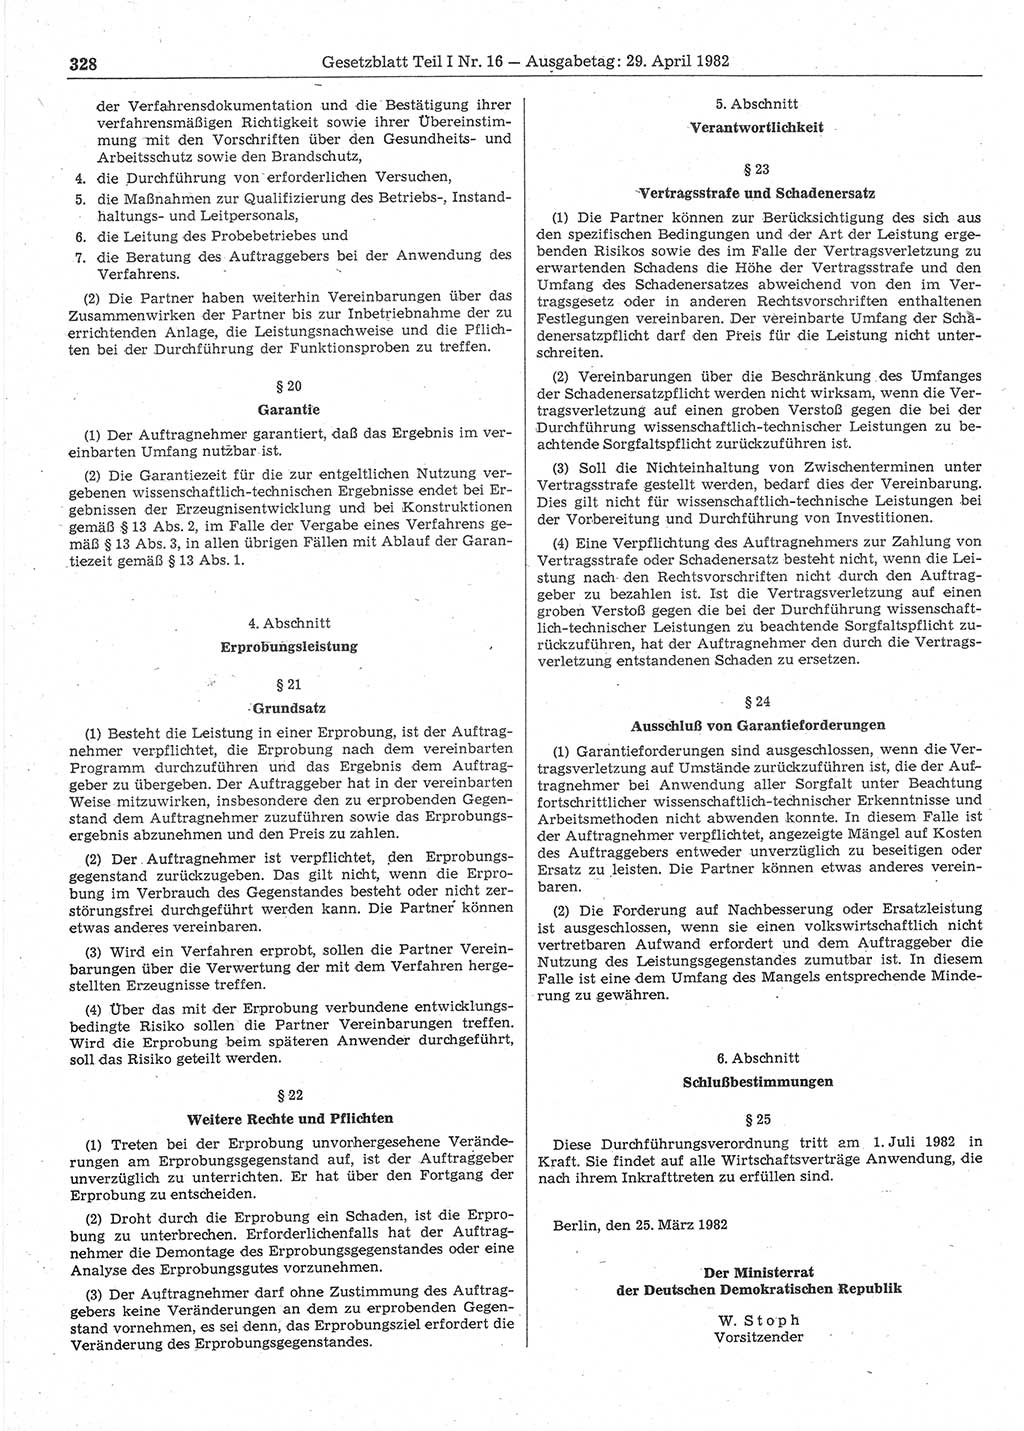 Gesetzblatt (GBl.) der Deutschen Demokratischen Republik (DDR) Teil Ⅰ 1982, Seite 328 (GBl. DDR Ⅰ 1982, S. 328)